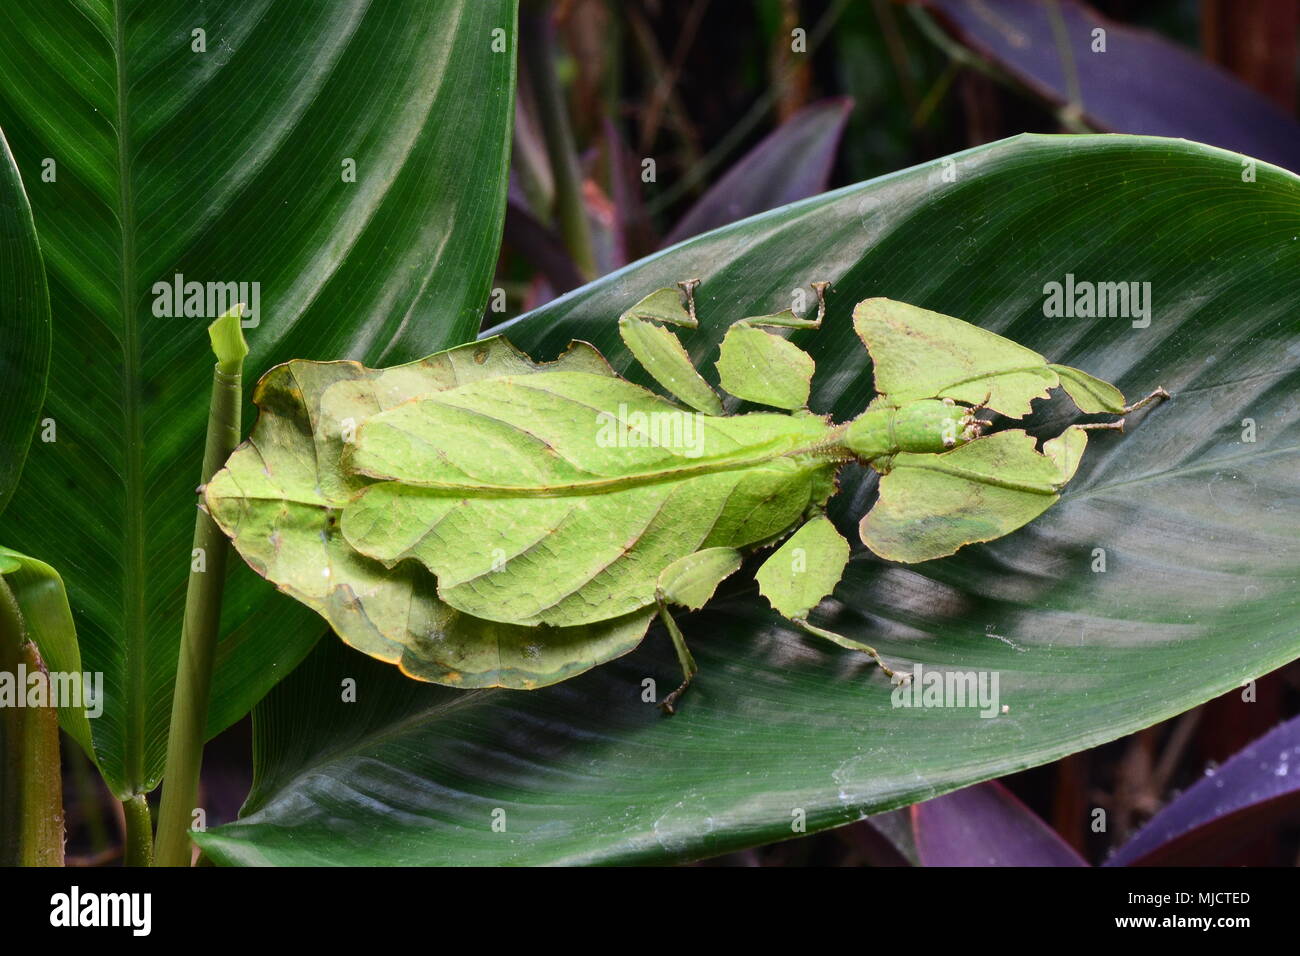 Riesige blatt Insekt sitzt auf einer Pflanze Blatt in den Gärten. Stockfoto